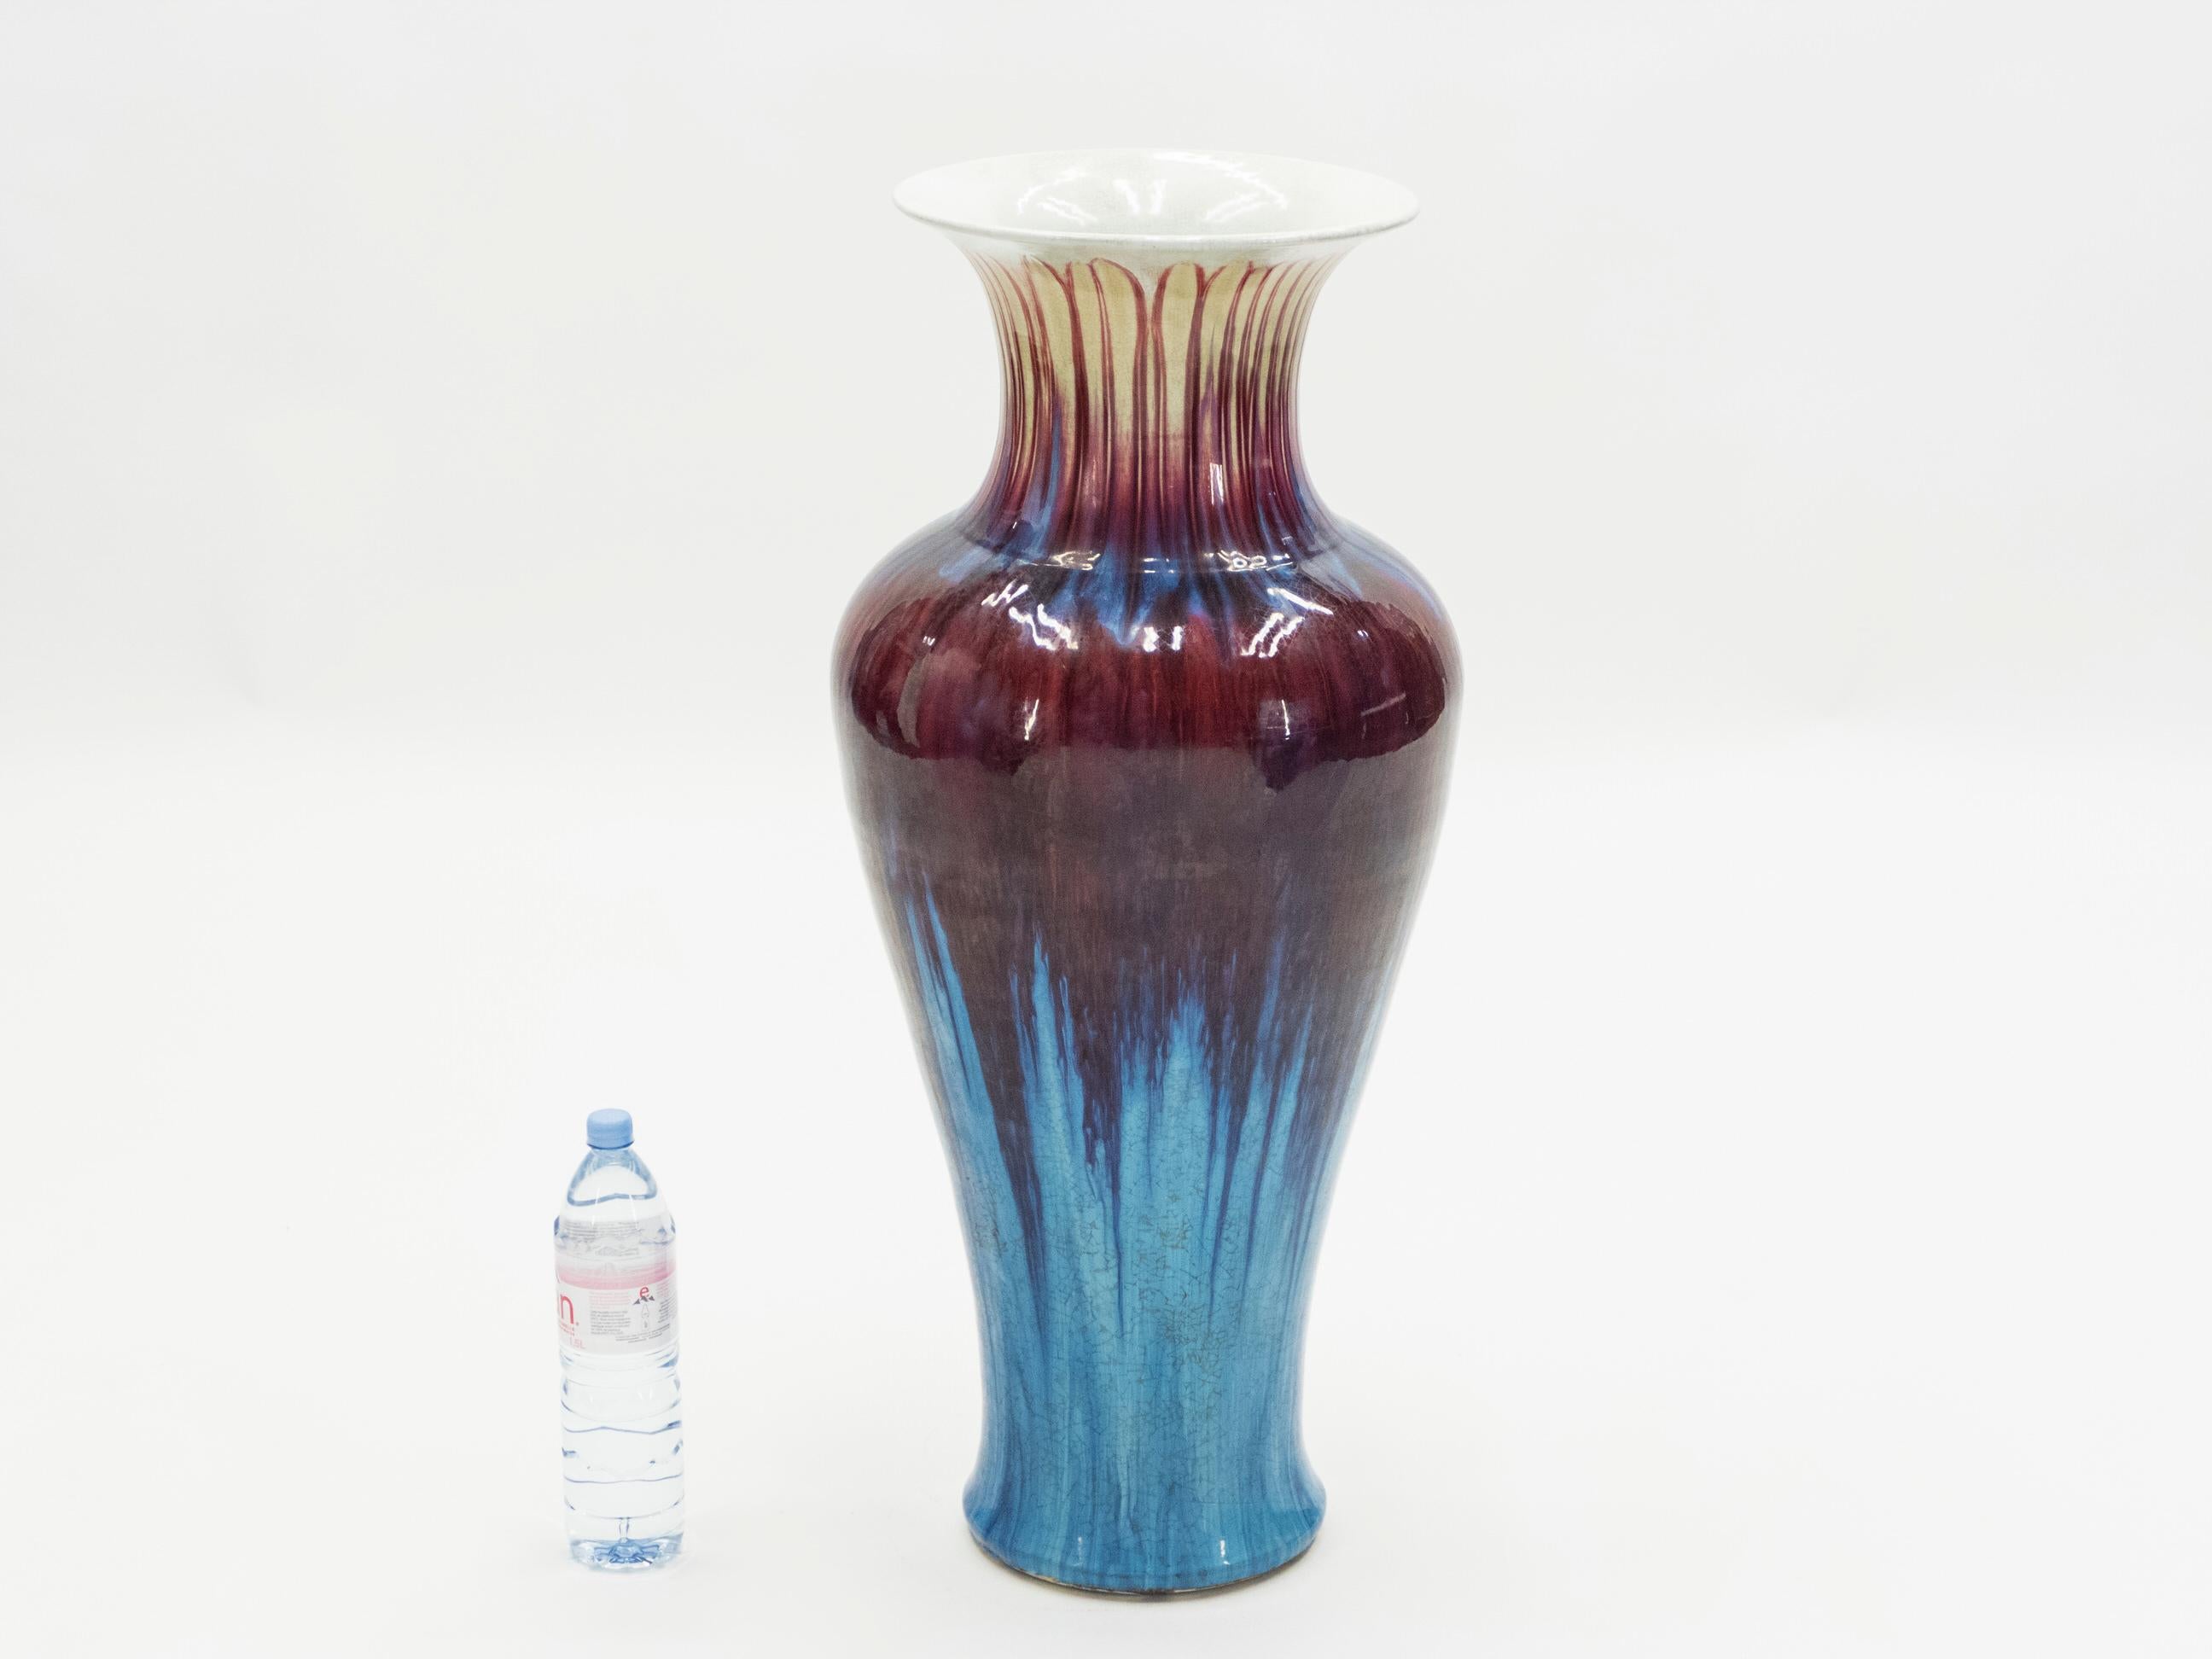 Diese beerenfarbene Keramikvase erinnert stark an die 1960er Jahre. Die tiefen, himbeerroten und bonbonblauen Farben sind um die Vase herum verstreut, wie bei einer Krawattenfärbung. Die roten Blüten erstrecken sich über den breitesten Teil der Vase